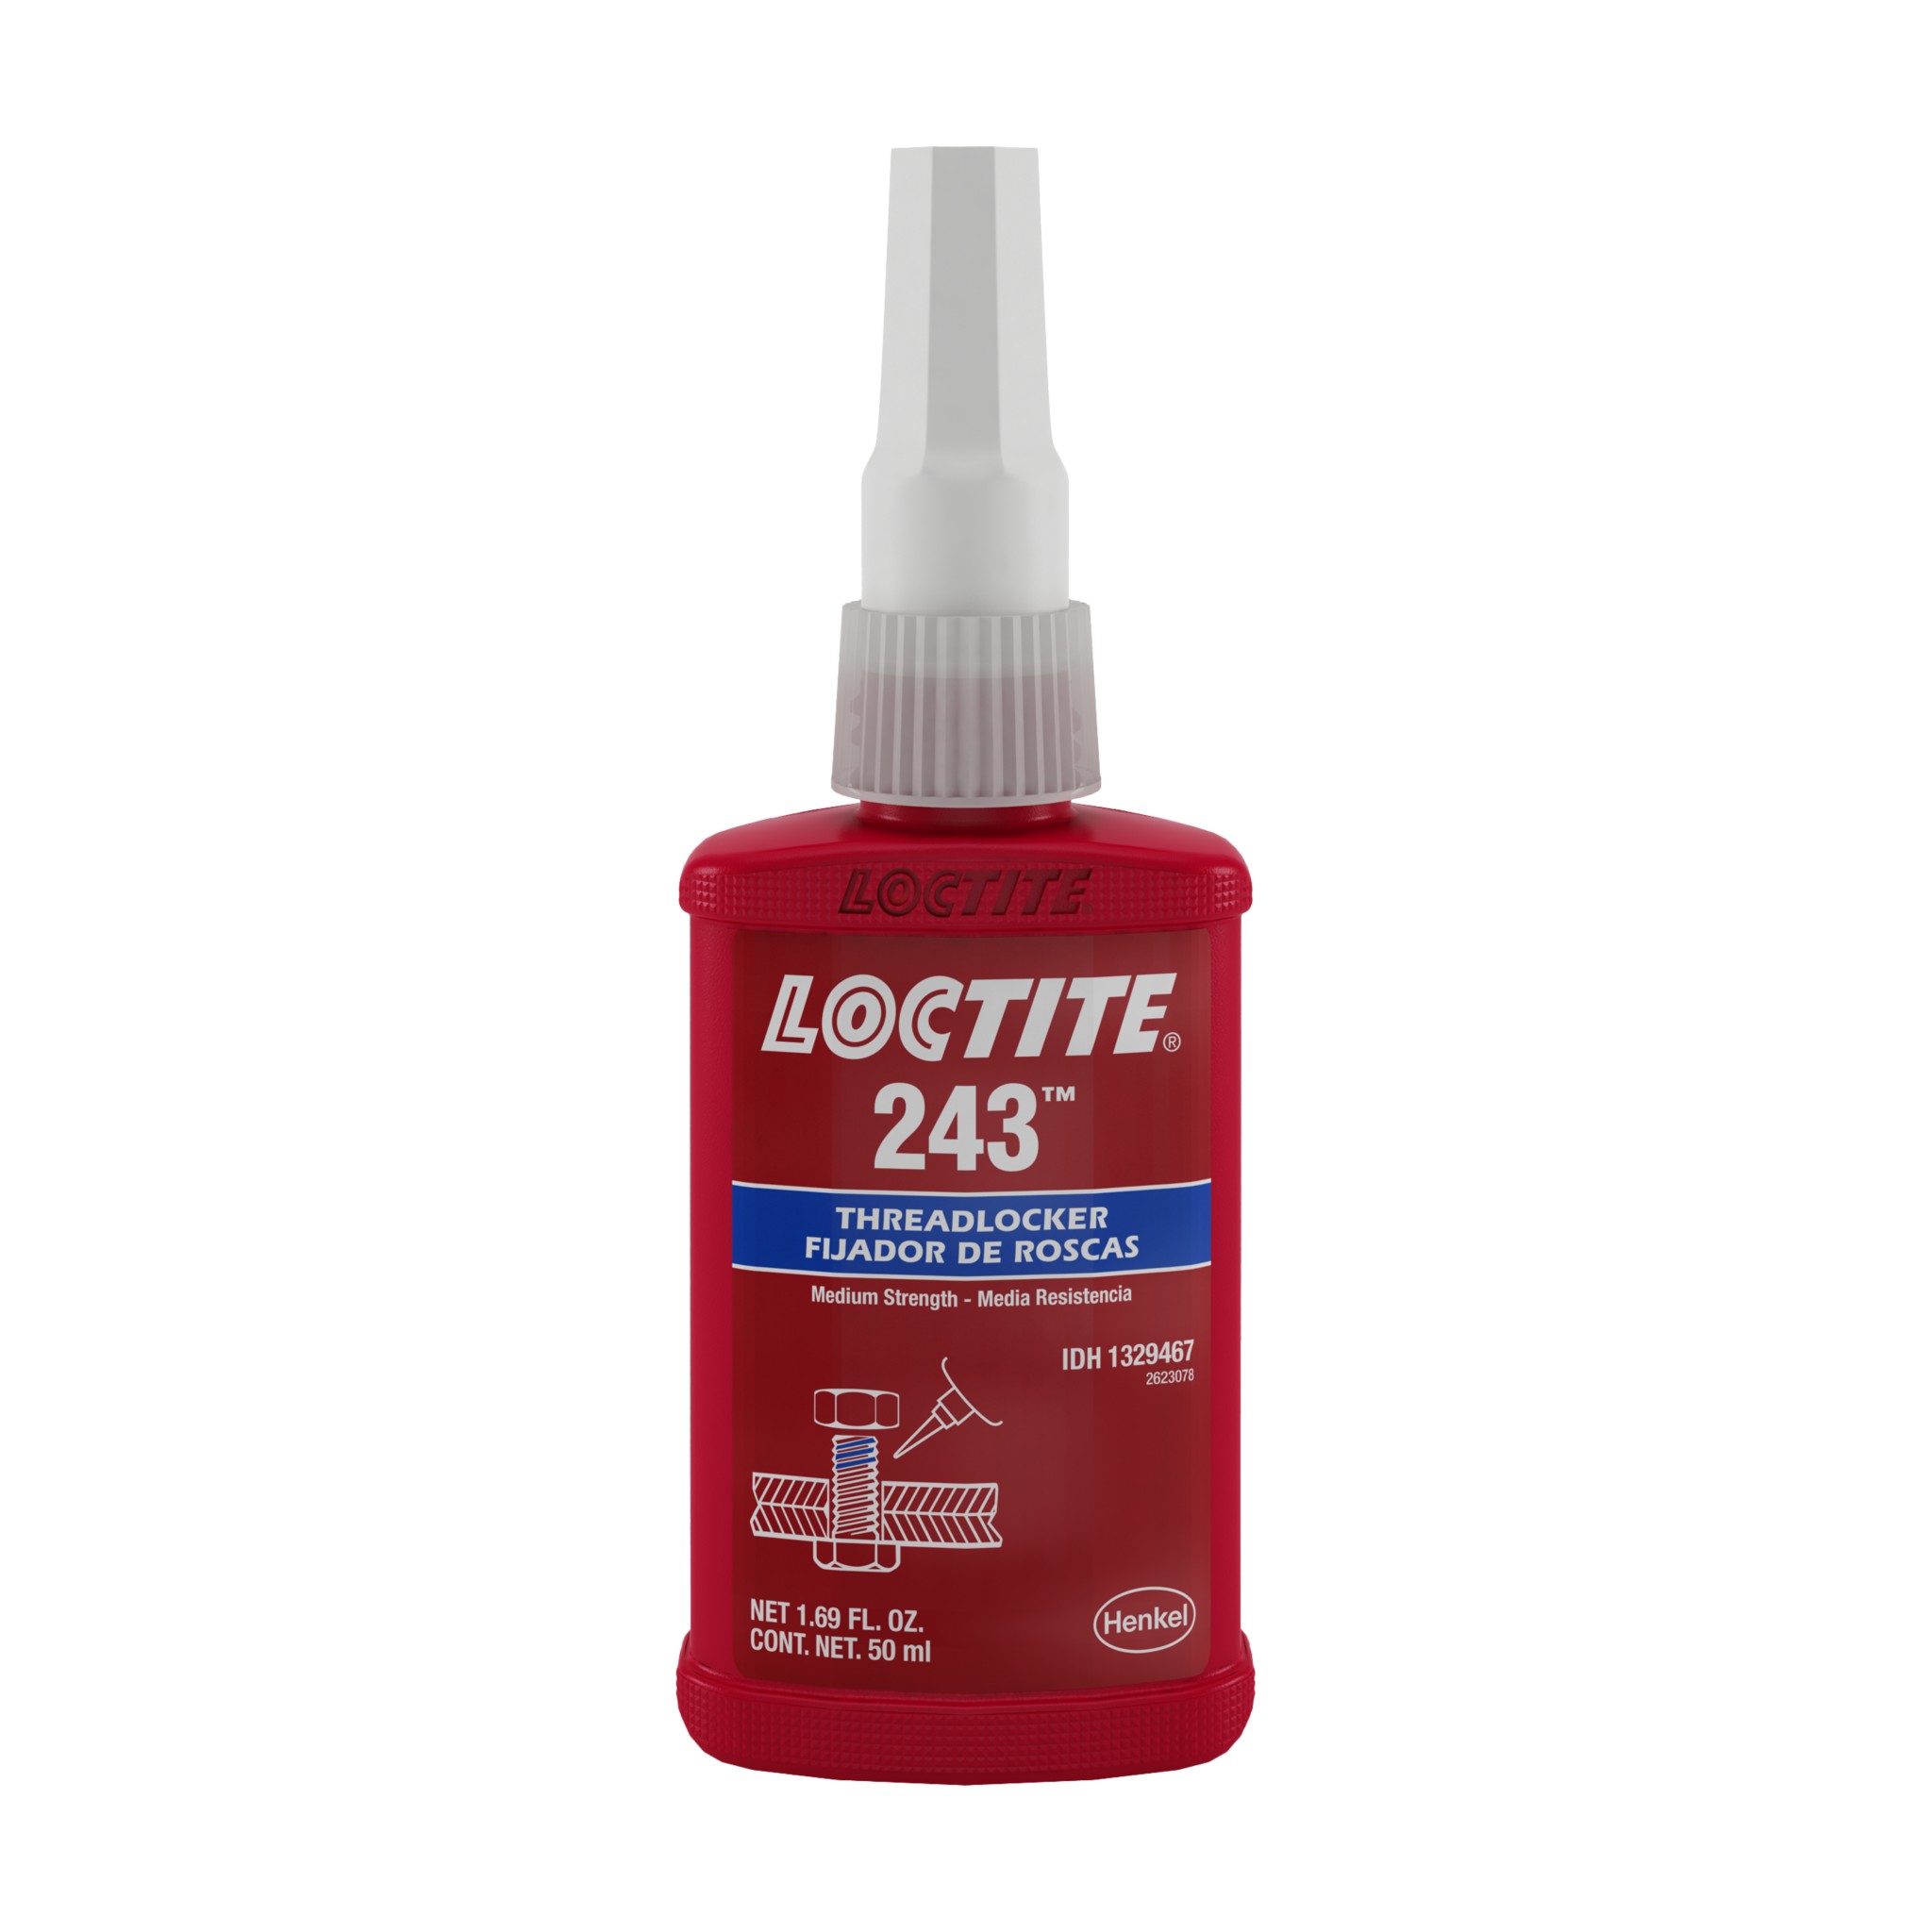  LOCTITE 243 Threadlocker for Automotive: Medium-Strength, Oil  Tolerant, High-Temperature, Anaerobic, General Purpose